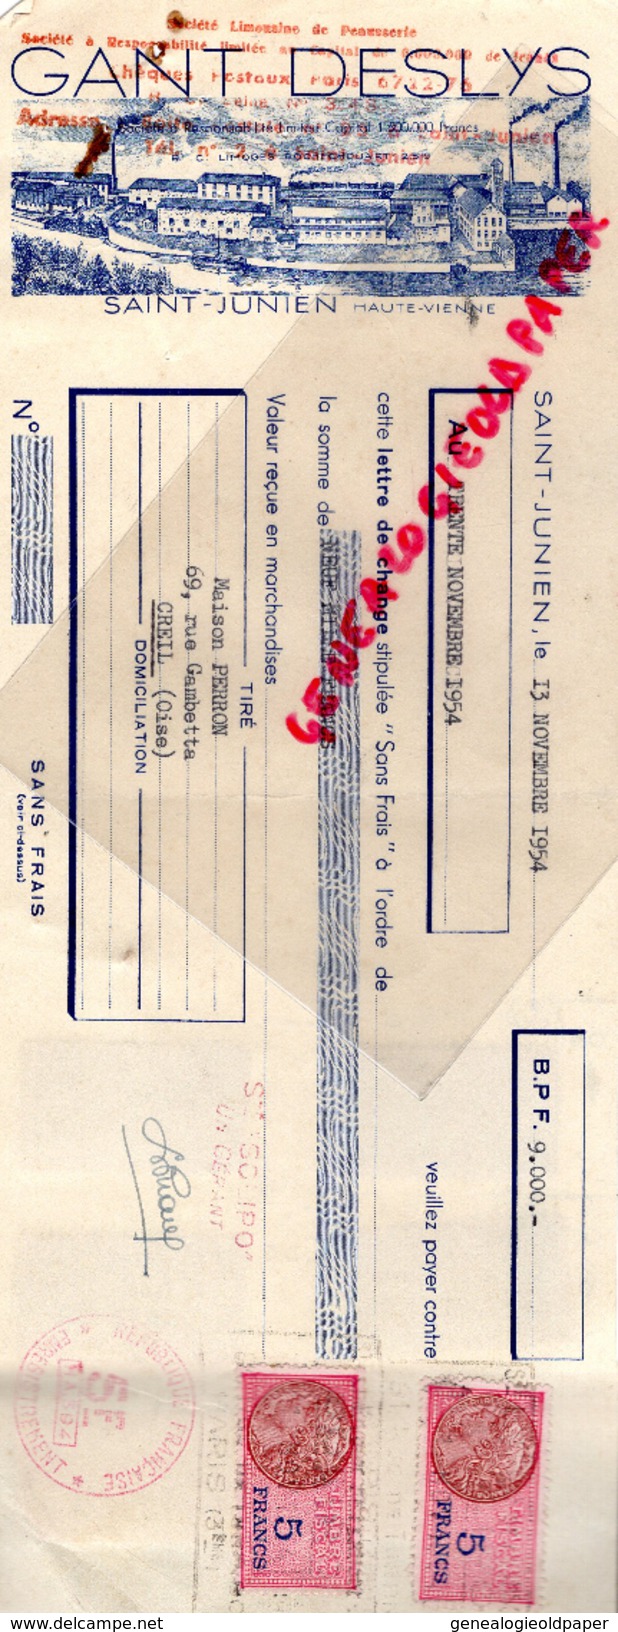 87 - ST SAINT JUNIEN - TRAITE GANTERIE GANT DESLYS- MAISON PERRON CREIL- GANTS- MEGISSERIE- 1954 MEGISSERIE - Electricity & Gas